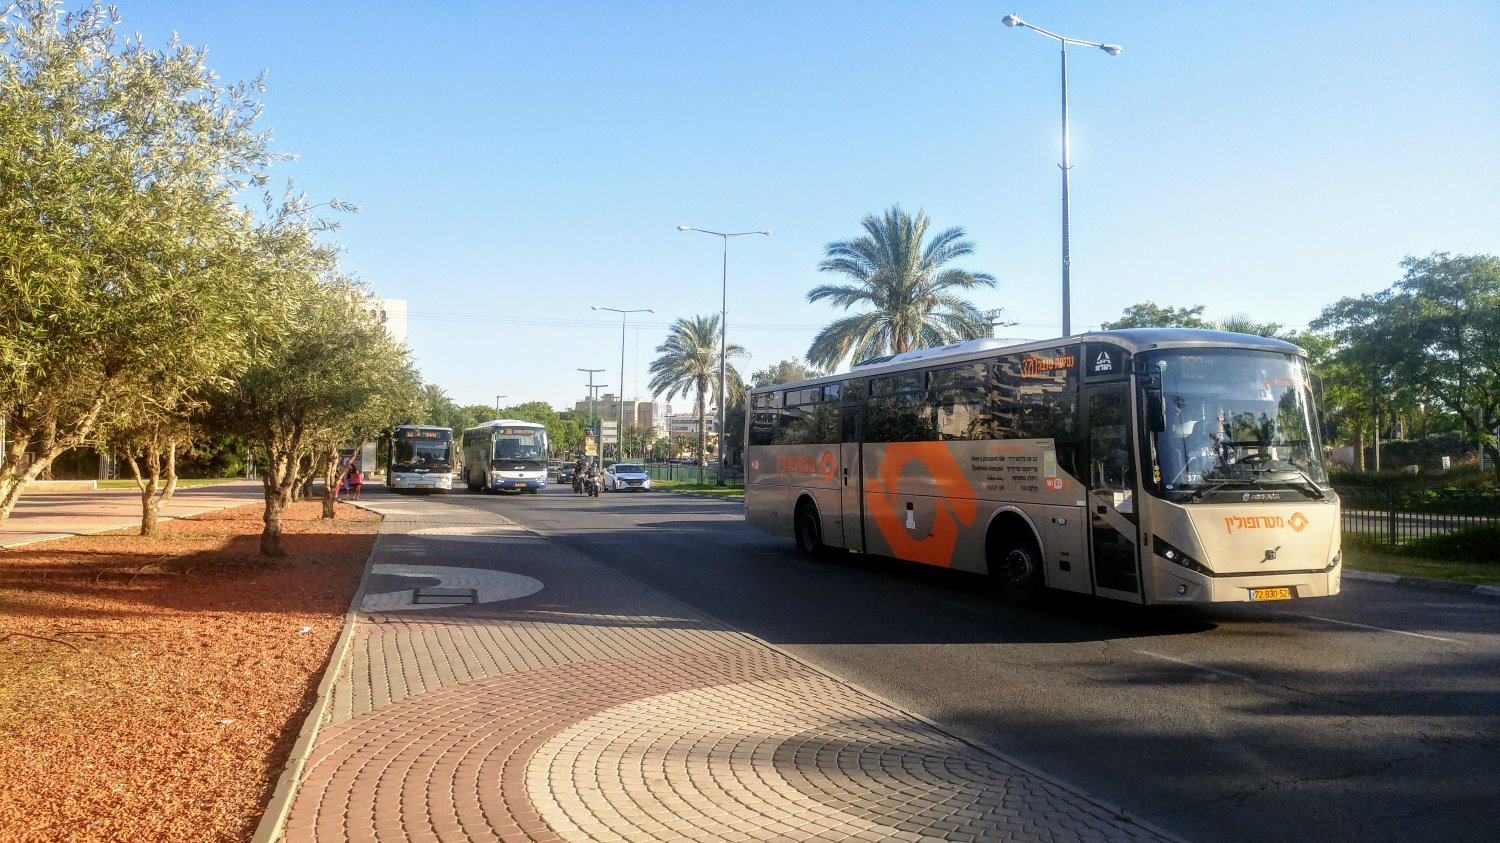 אוזלת יד בטיפול בתחבורה הציבורית בישראל, ונוסעי התחבורה הציבורית נאלצים לספוג כל פעם מחדש. הגיע הזמן לפתרון. צילום: שרון טל